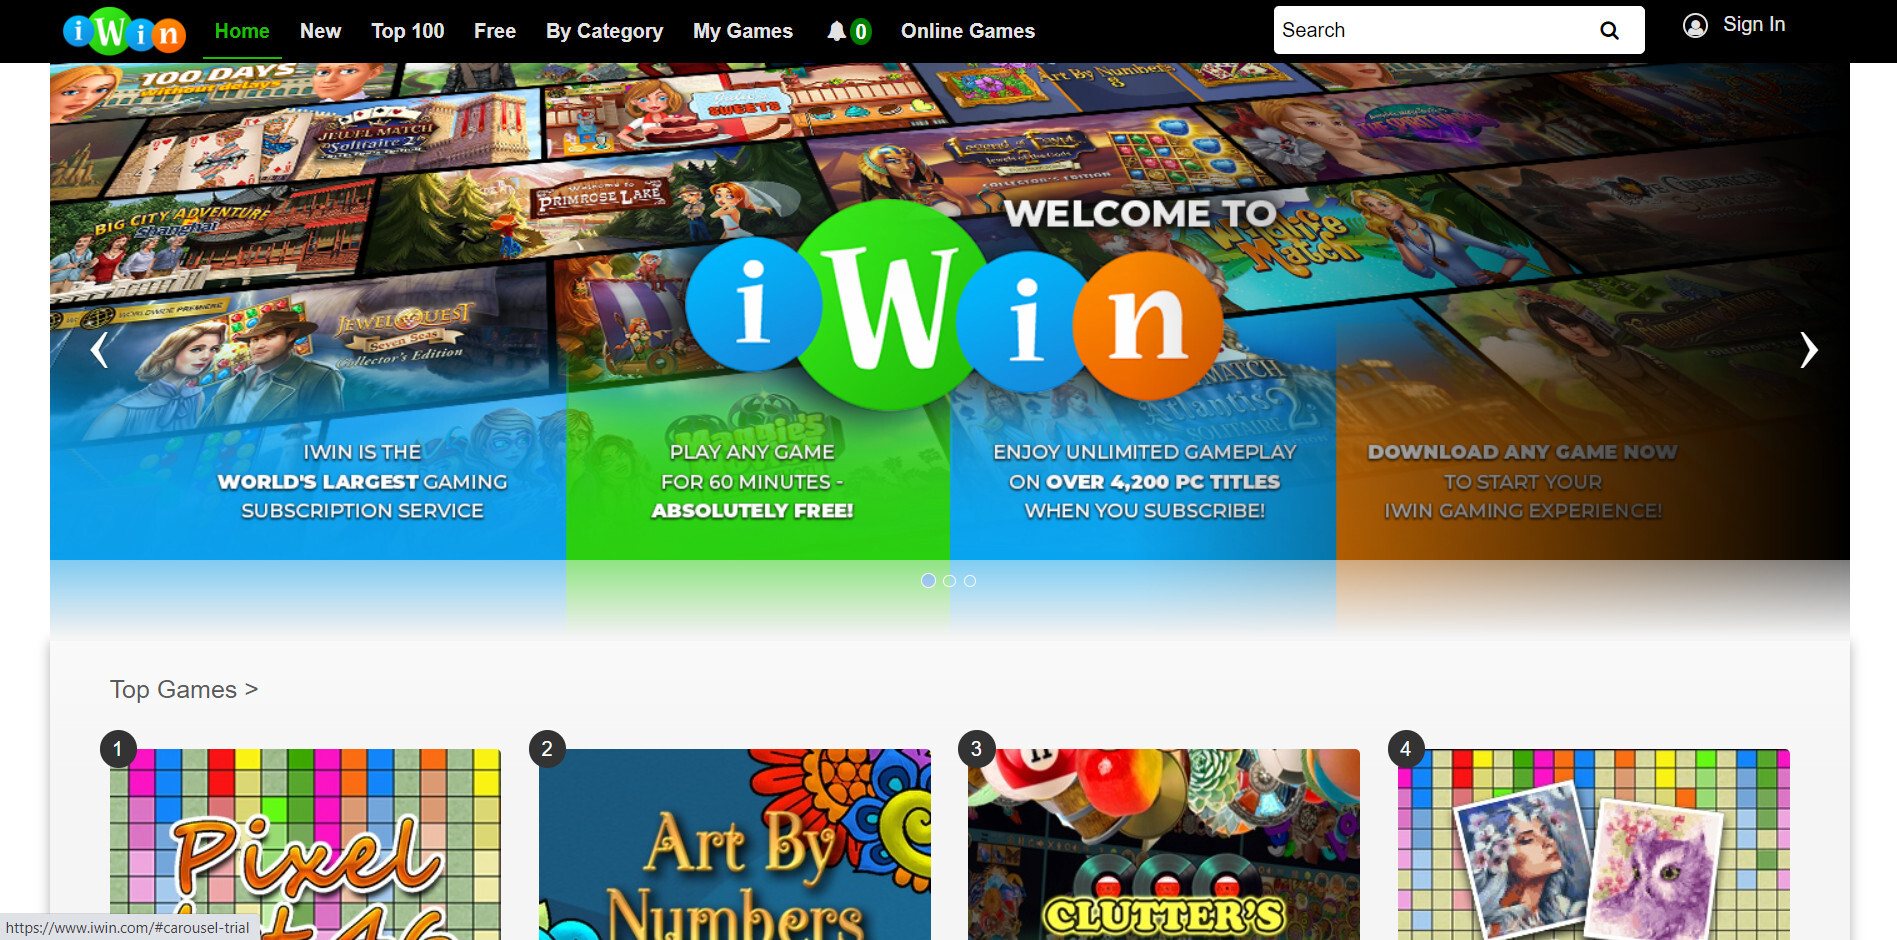 Giới thiệu cổng game Iwin com